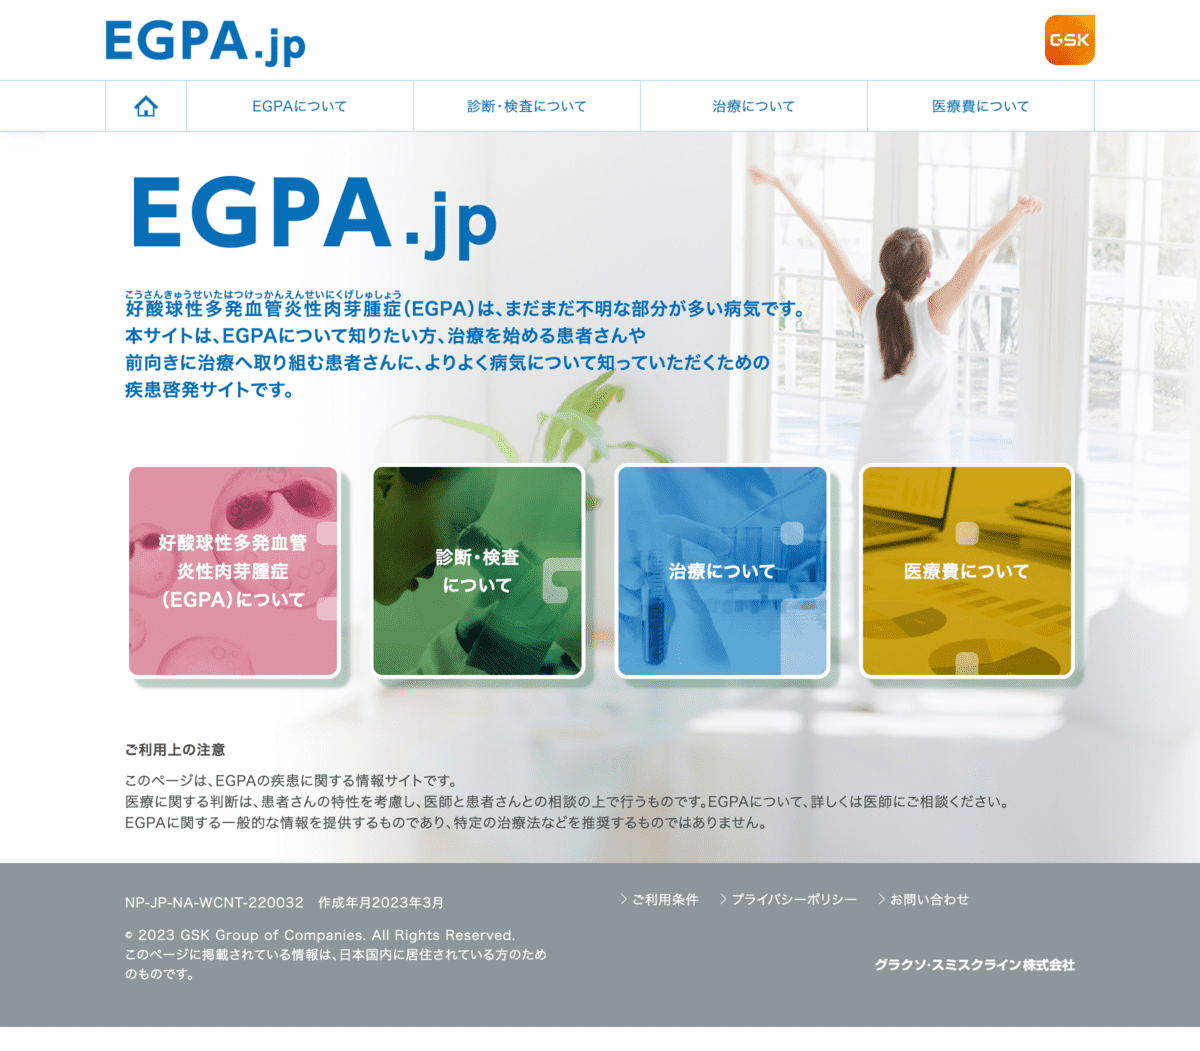 EGPA.jp